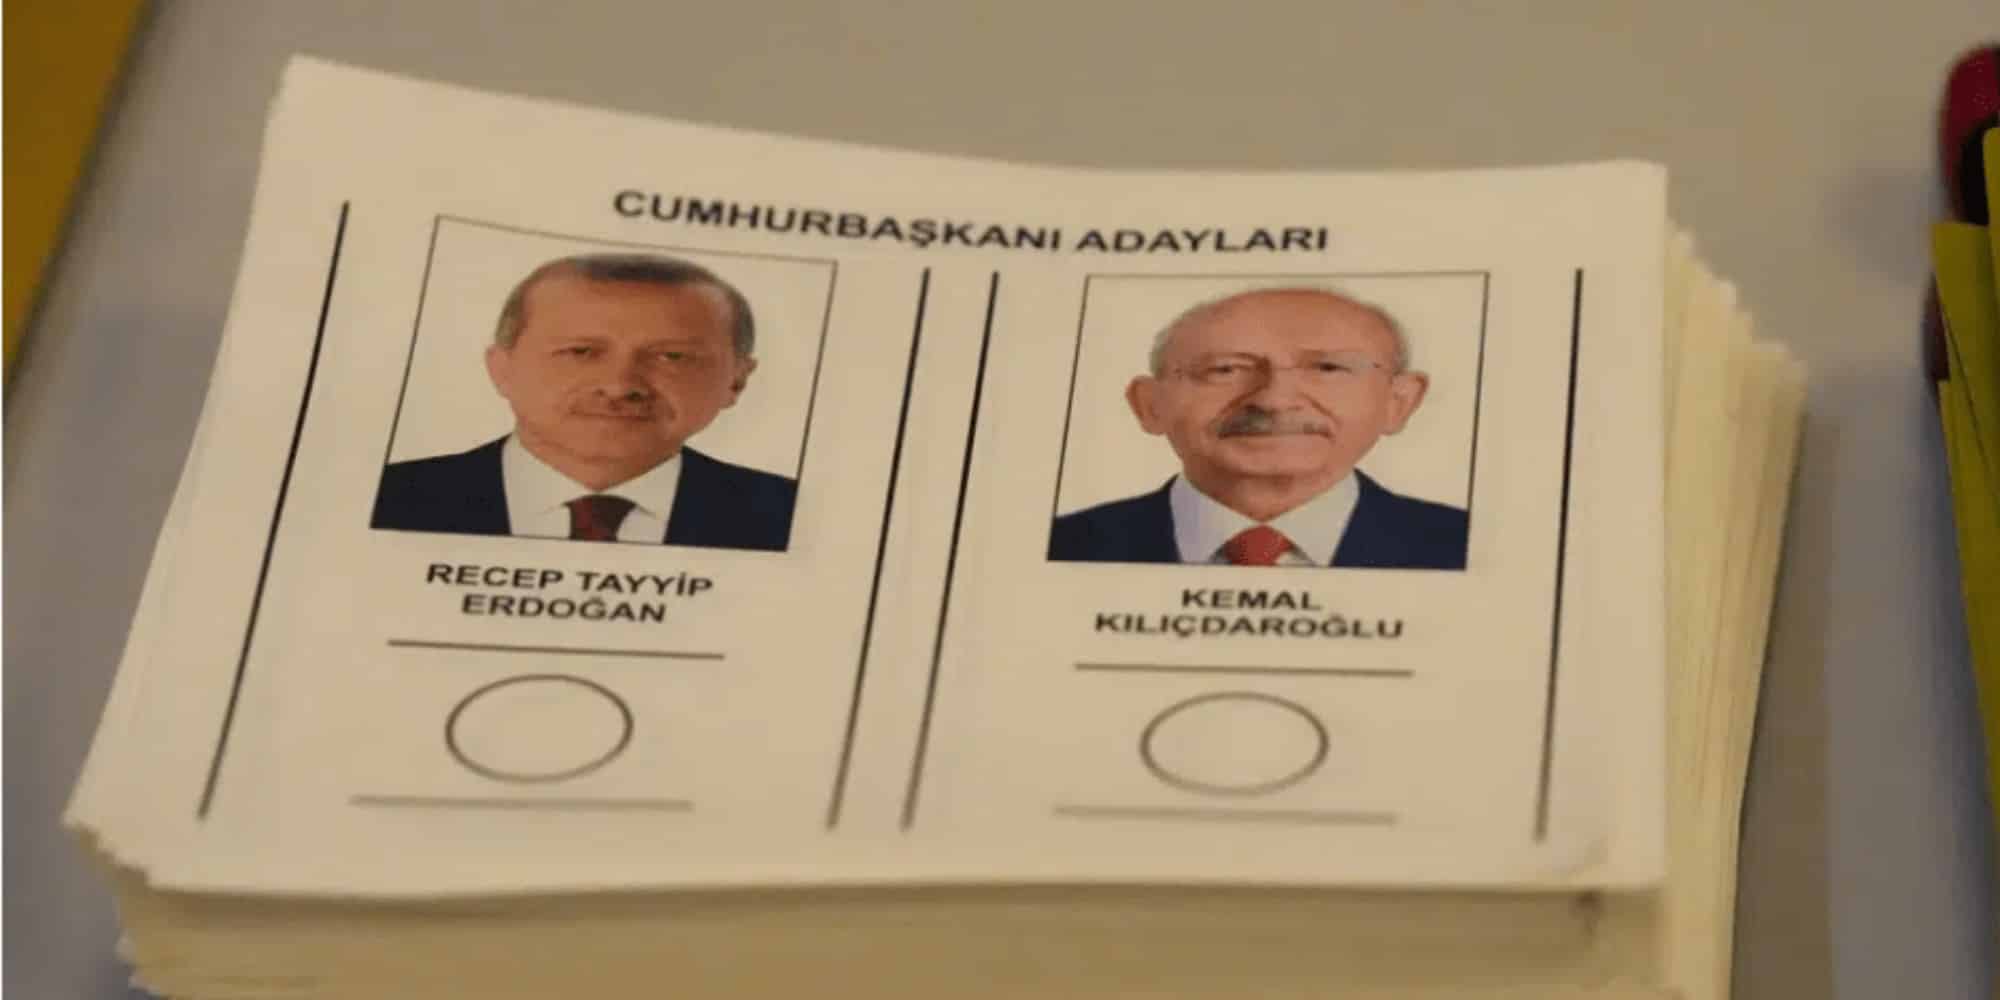 Εκλογές στην Τουρκία με Ερντογάν και Κιλιτσντάρογλου